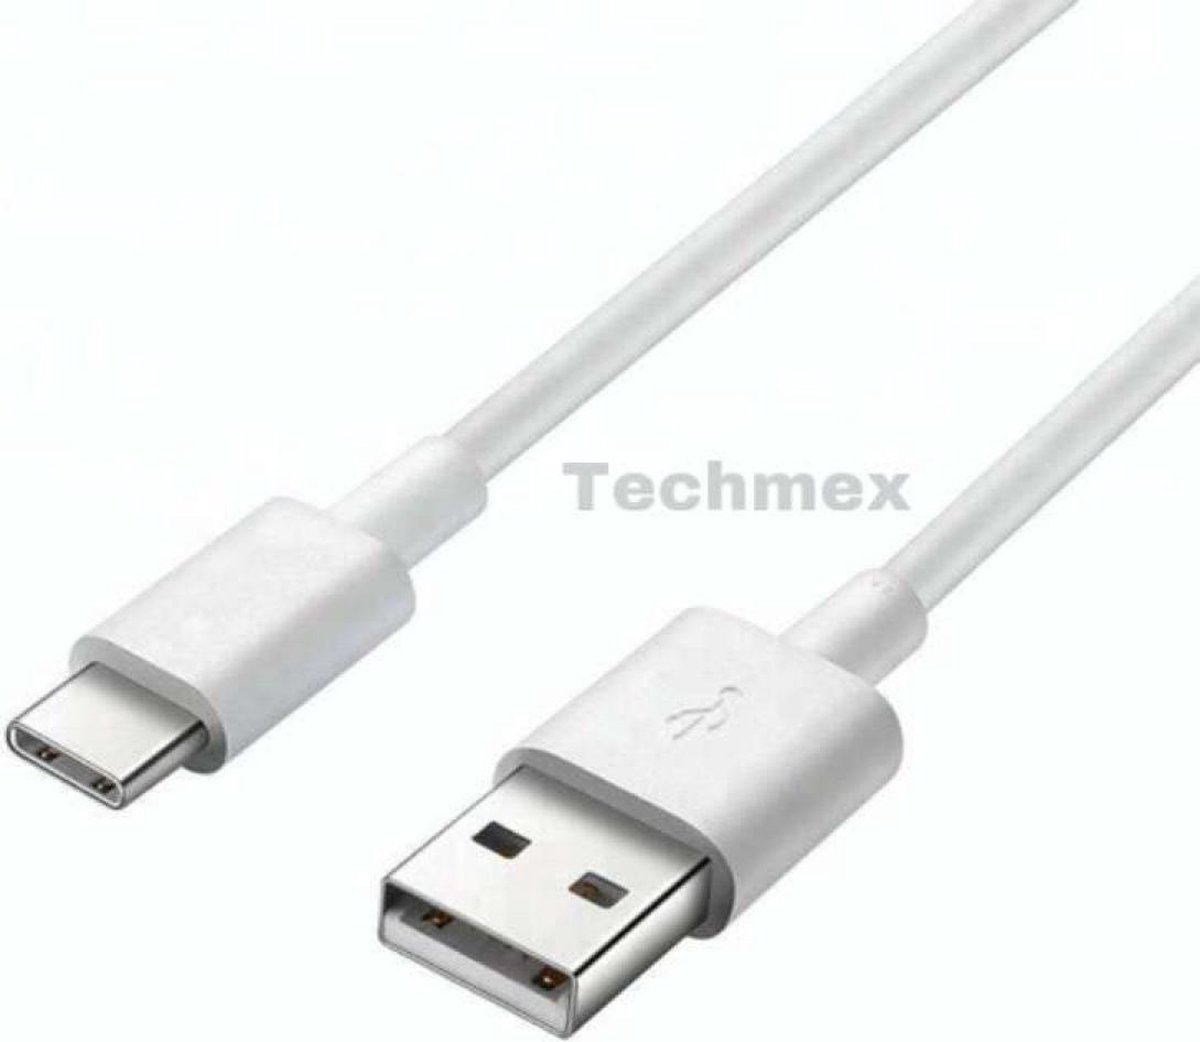 USB-C laadkabel 300 cm spelcomputers, controllers en telefoons - Oplaadkabel USB-C aansluiting wit 300 cm